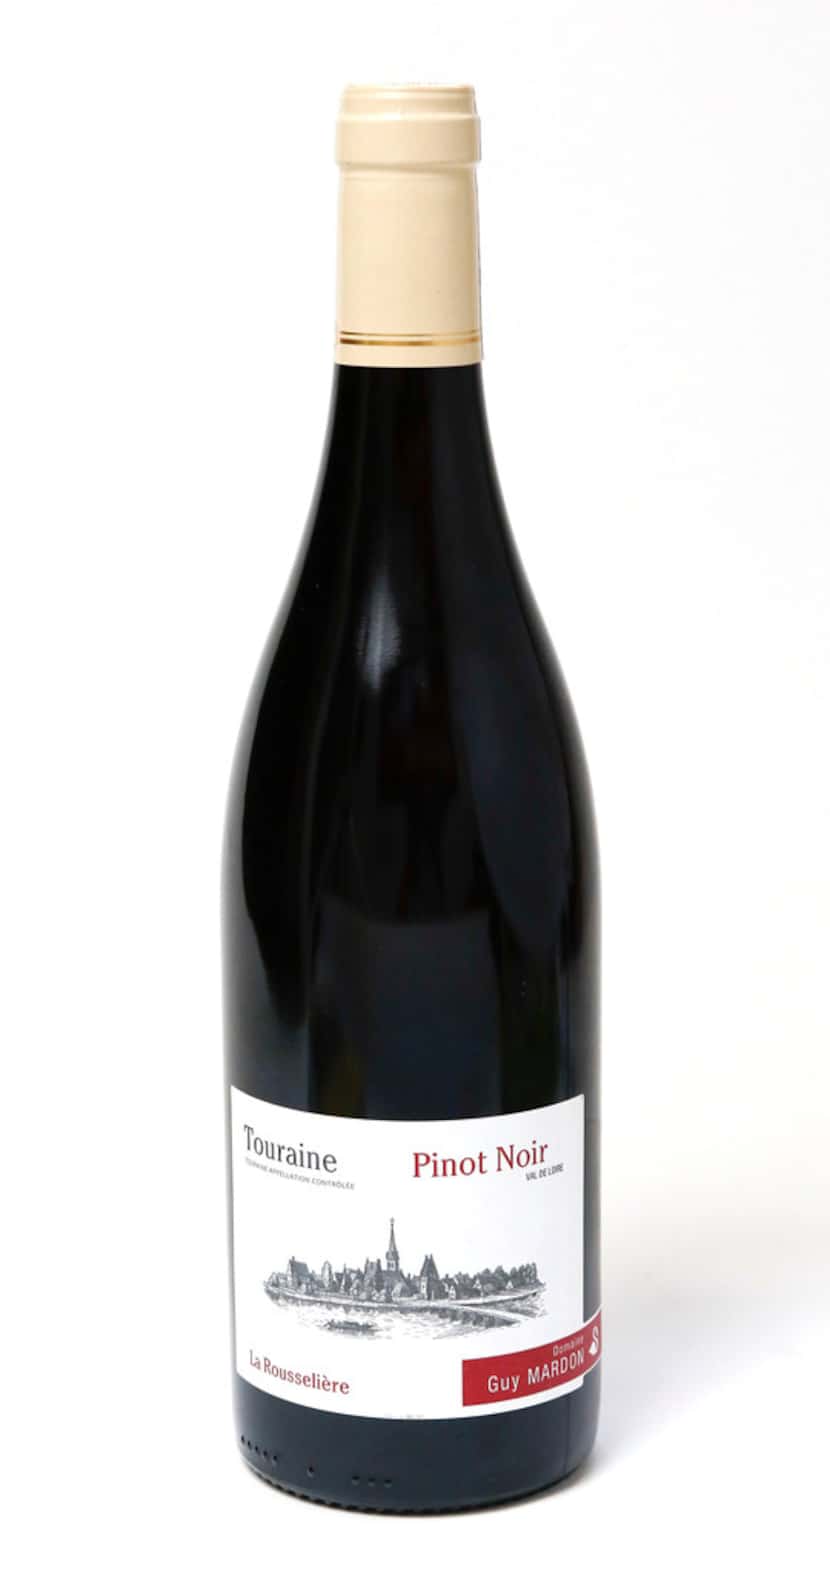 Domaine Guy Mardon "La Rousseliere" Touraine Pinot Noir, France